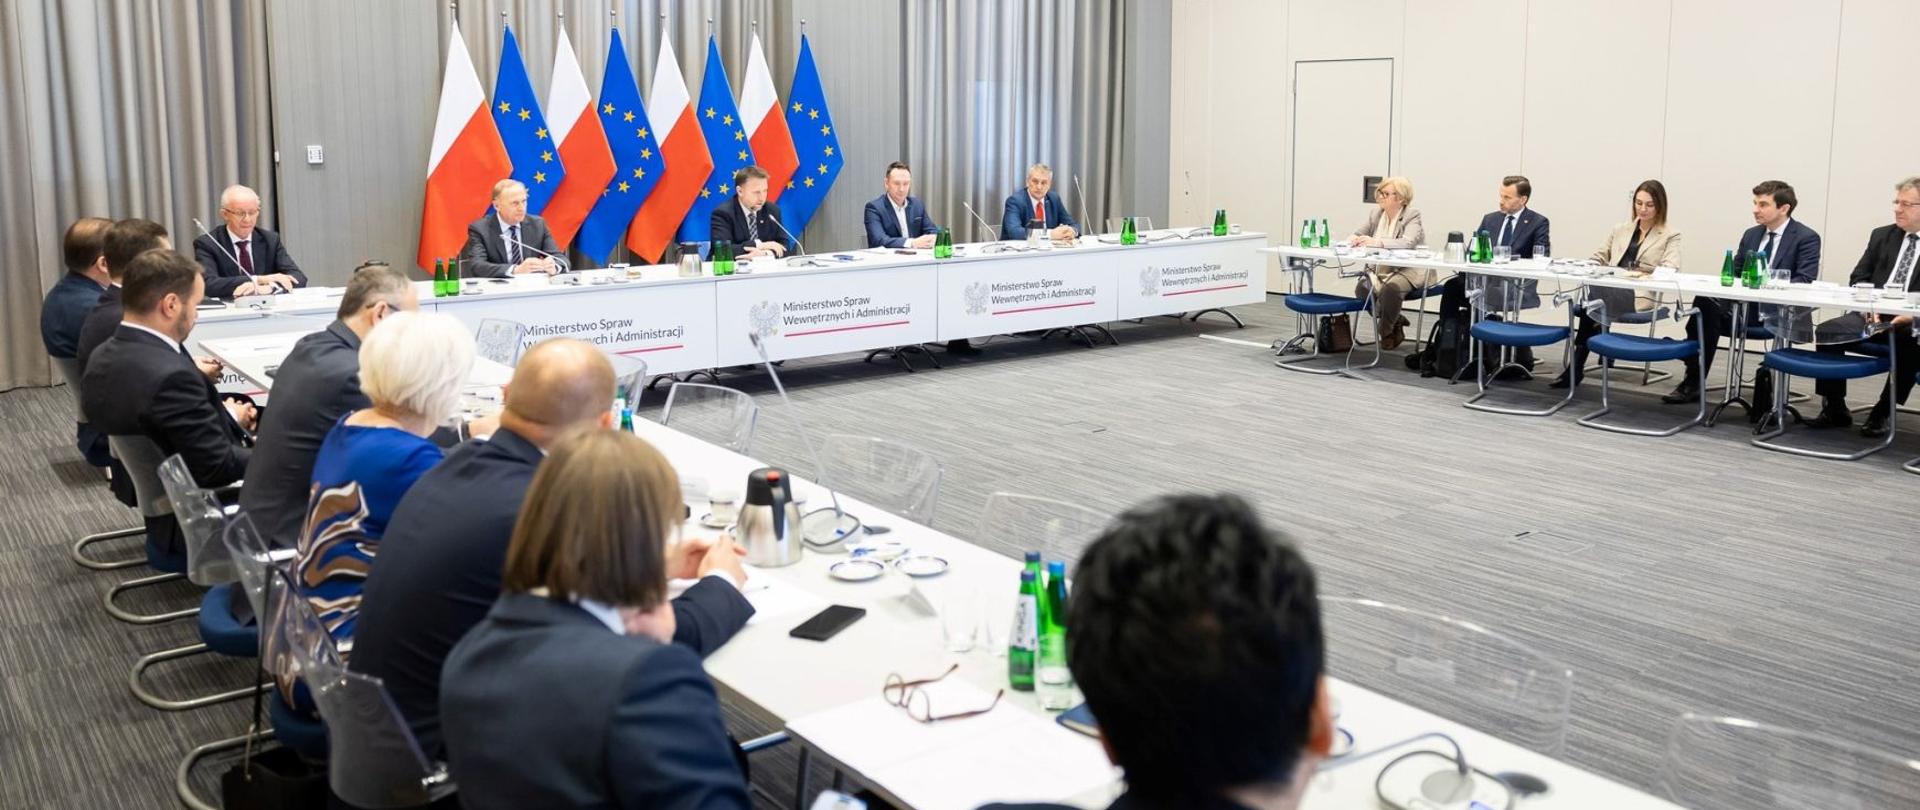 Grupa ludzi (minister spraw wewnętrznych i administracji, wiceministrowie i wojewodowie) siedzą przy stole podczas narady